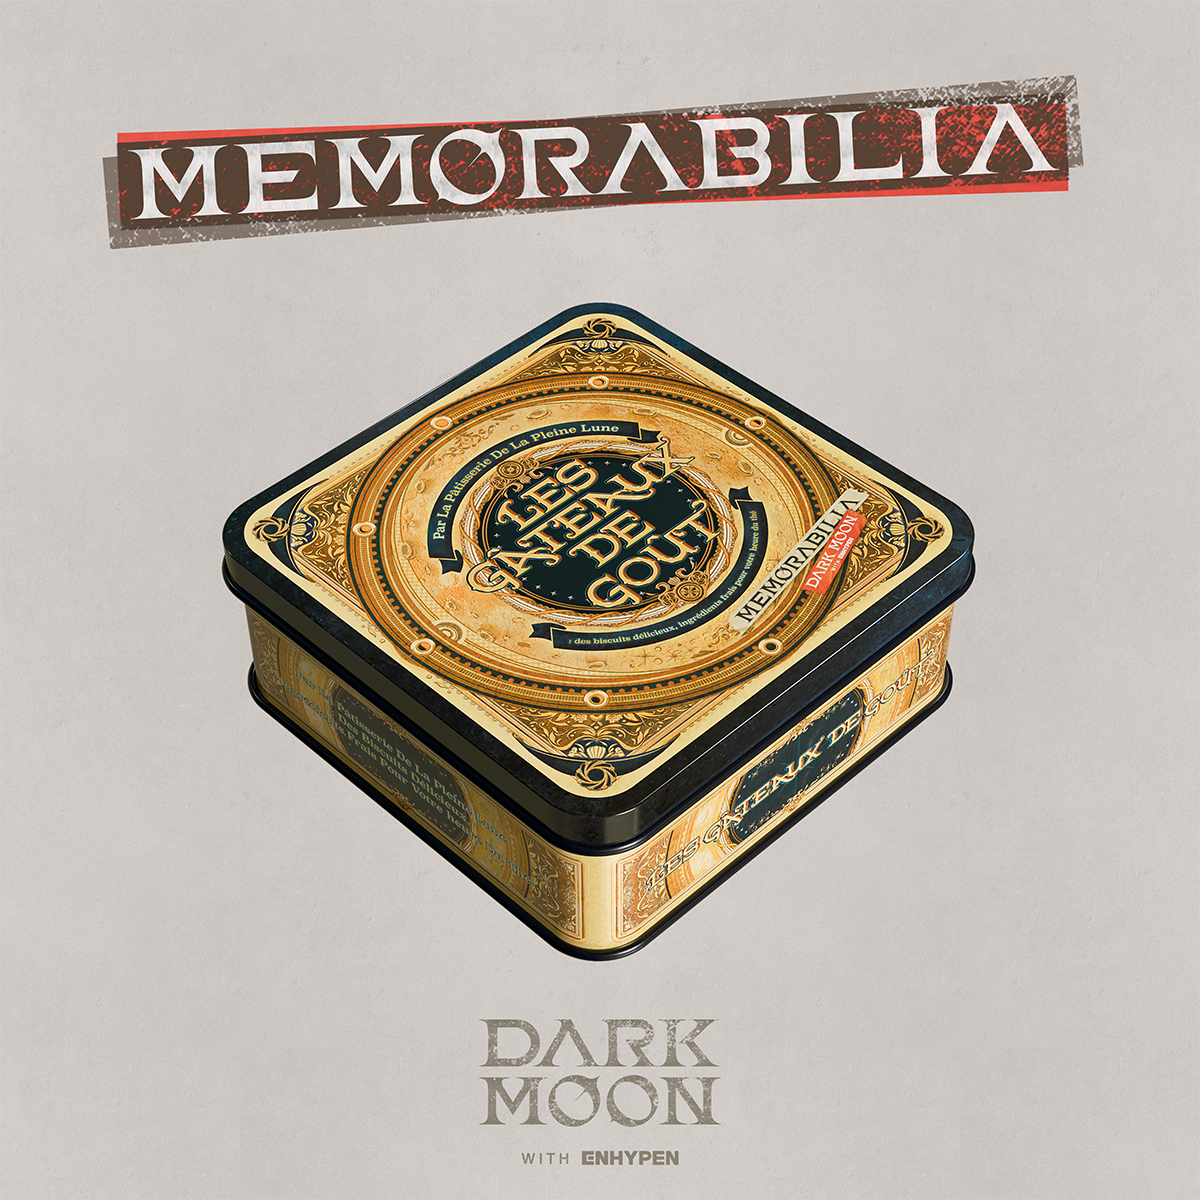 ENHYPEN - DARK MOON SPECIAL ALBUM 'MEMORABILIA' (Moon Ver.)